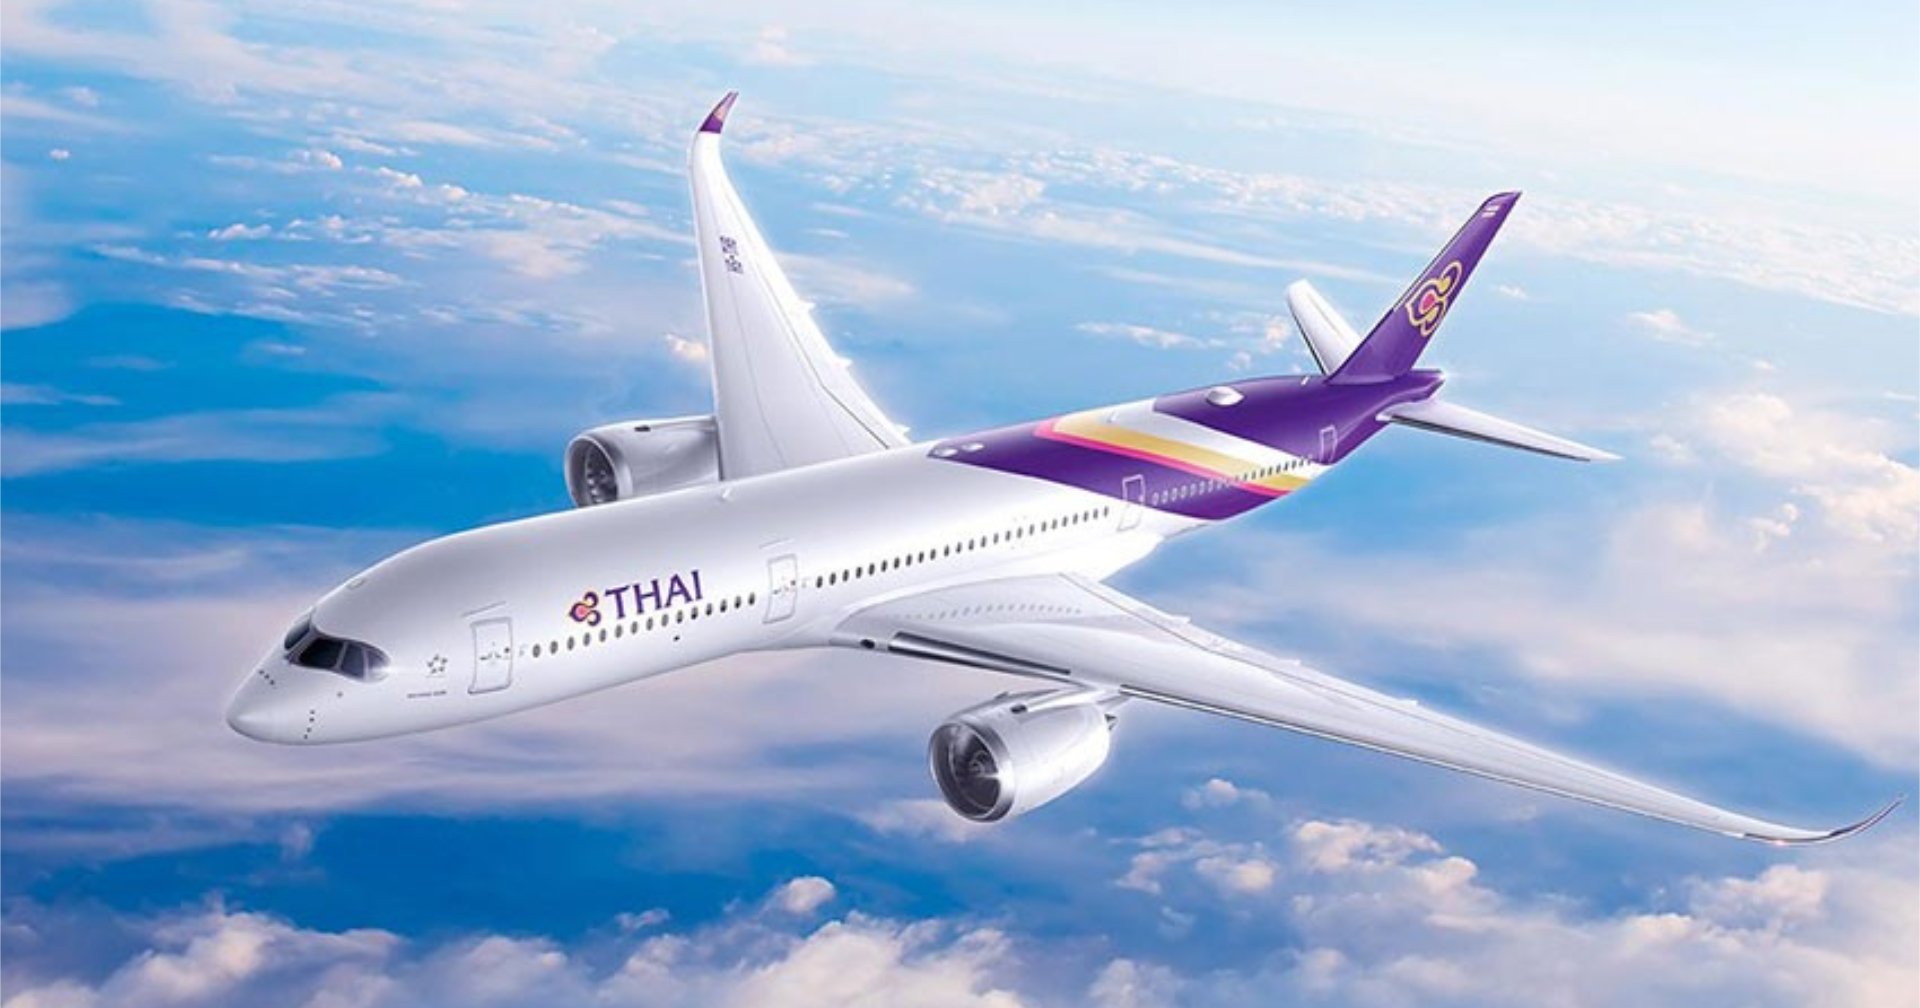 การบินไทยเตรียมซื้อเครื่องบินใหม่ 51 ลำ ทดแทนเครื่องบินเก่า – ดันธุรกิจขยายตัว